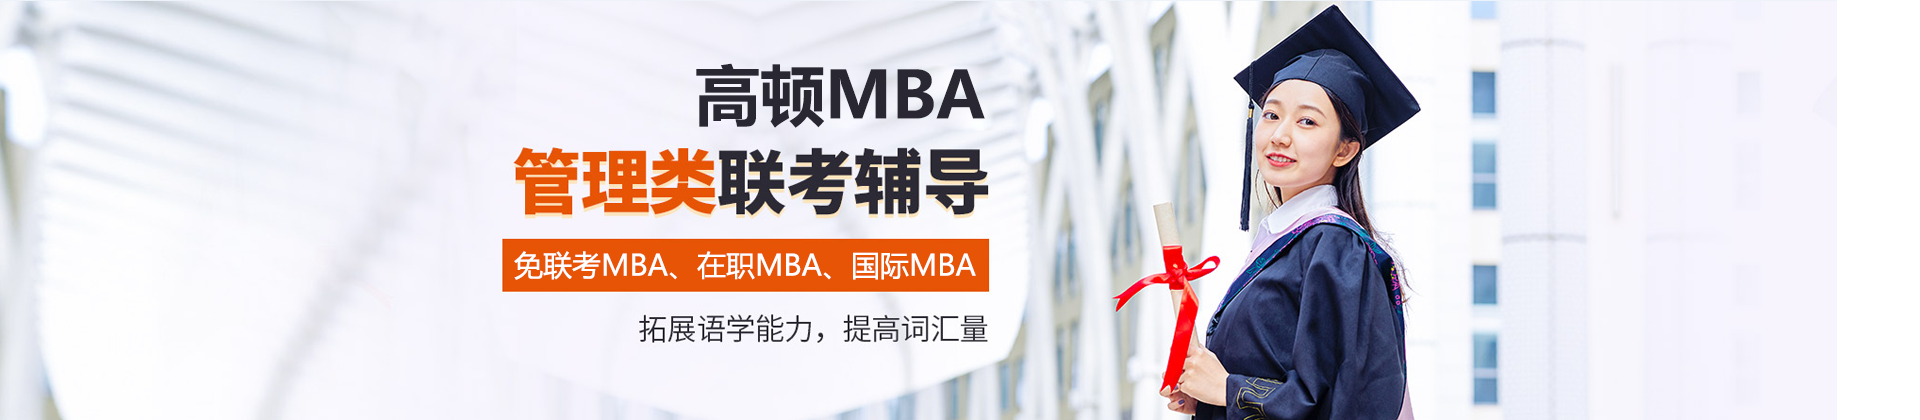 长沙高顿MBA